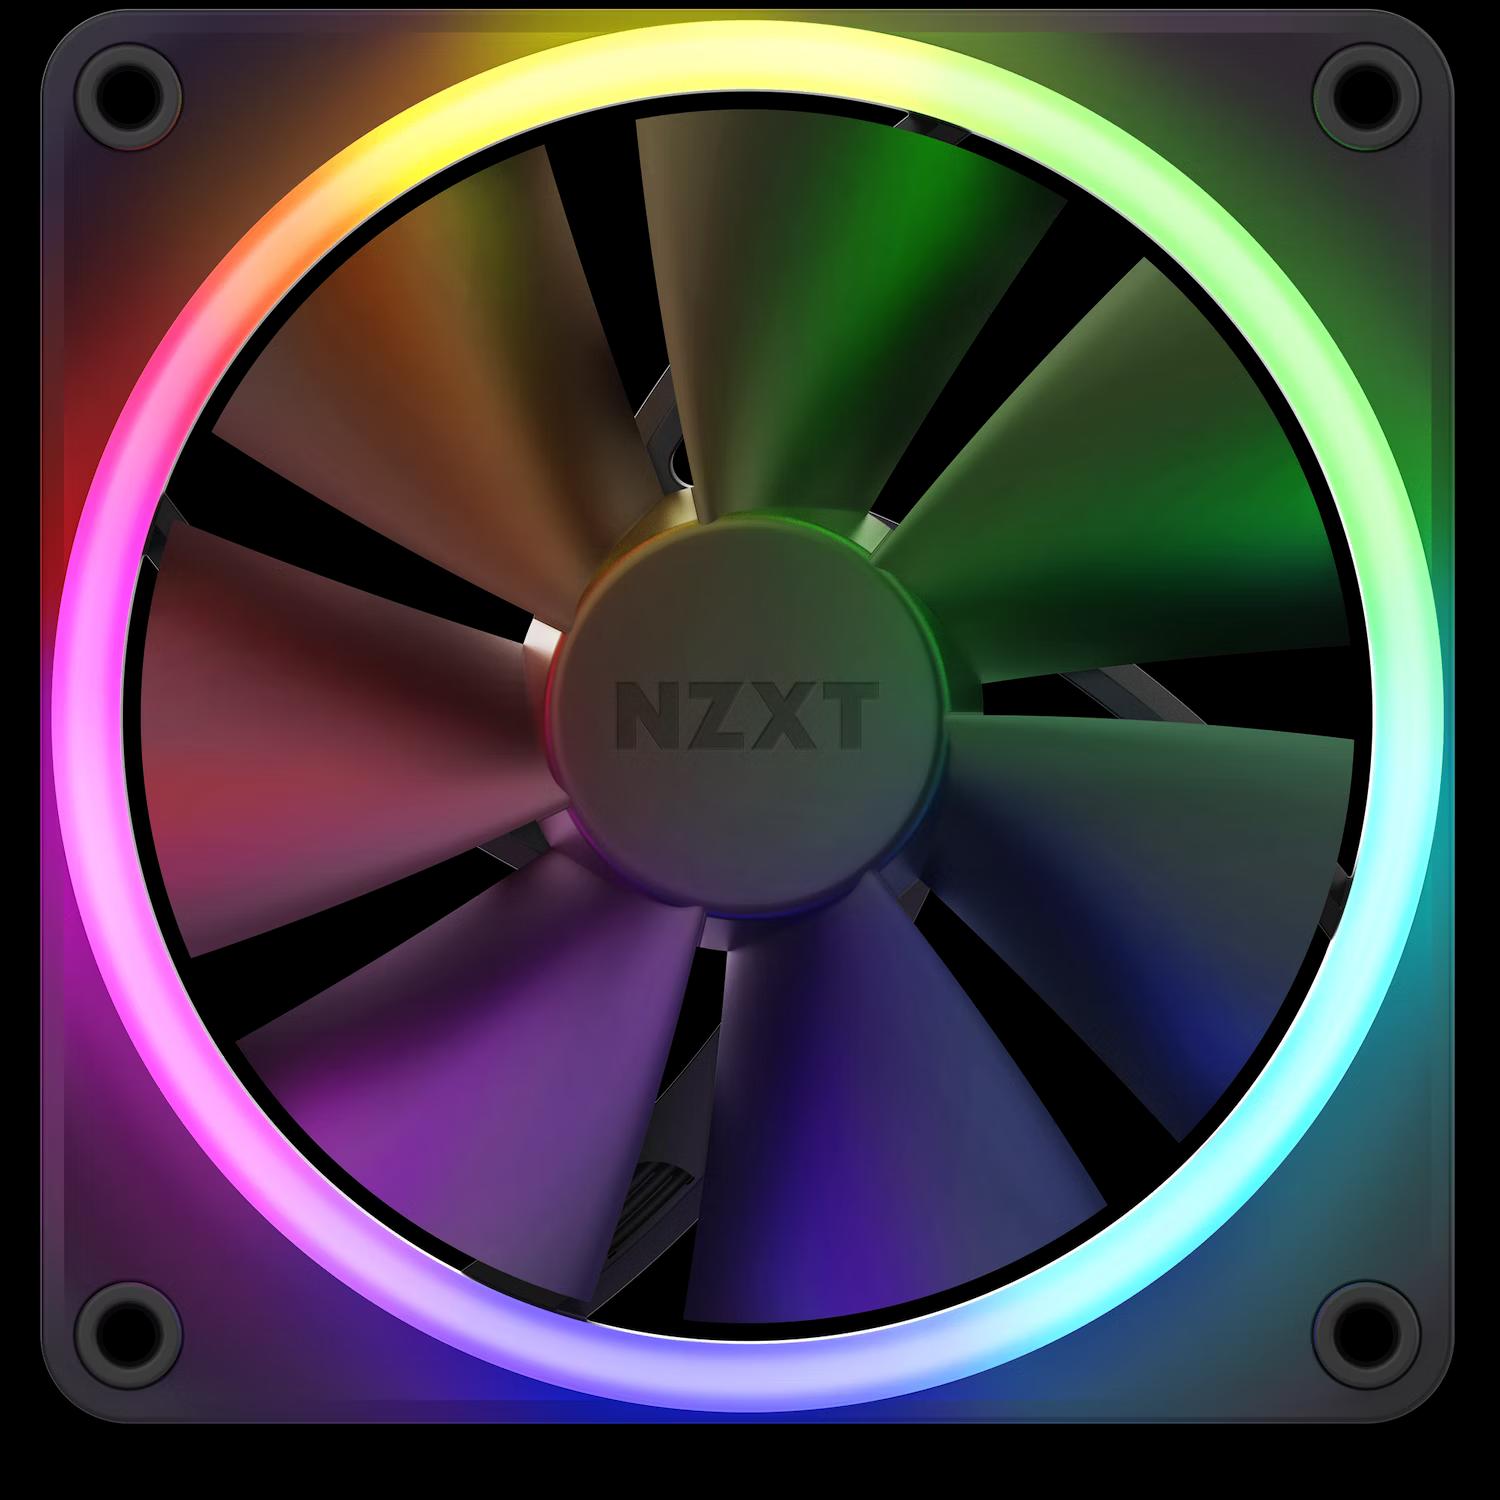 NZXT F120RGB CORE 120MM RGB FAN BLACK